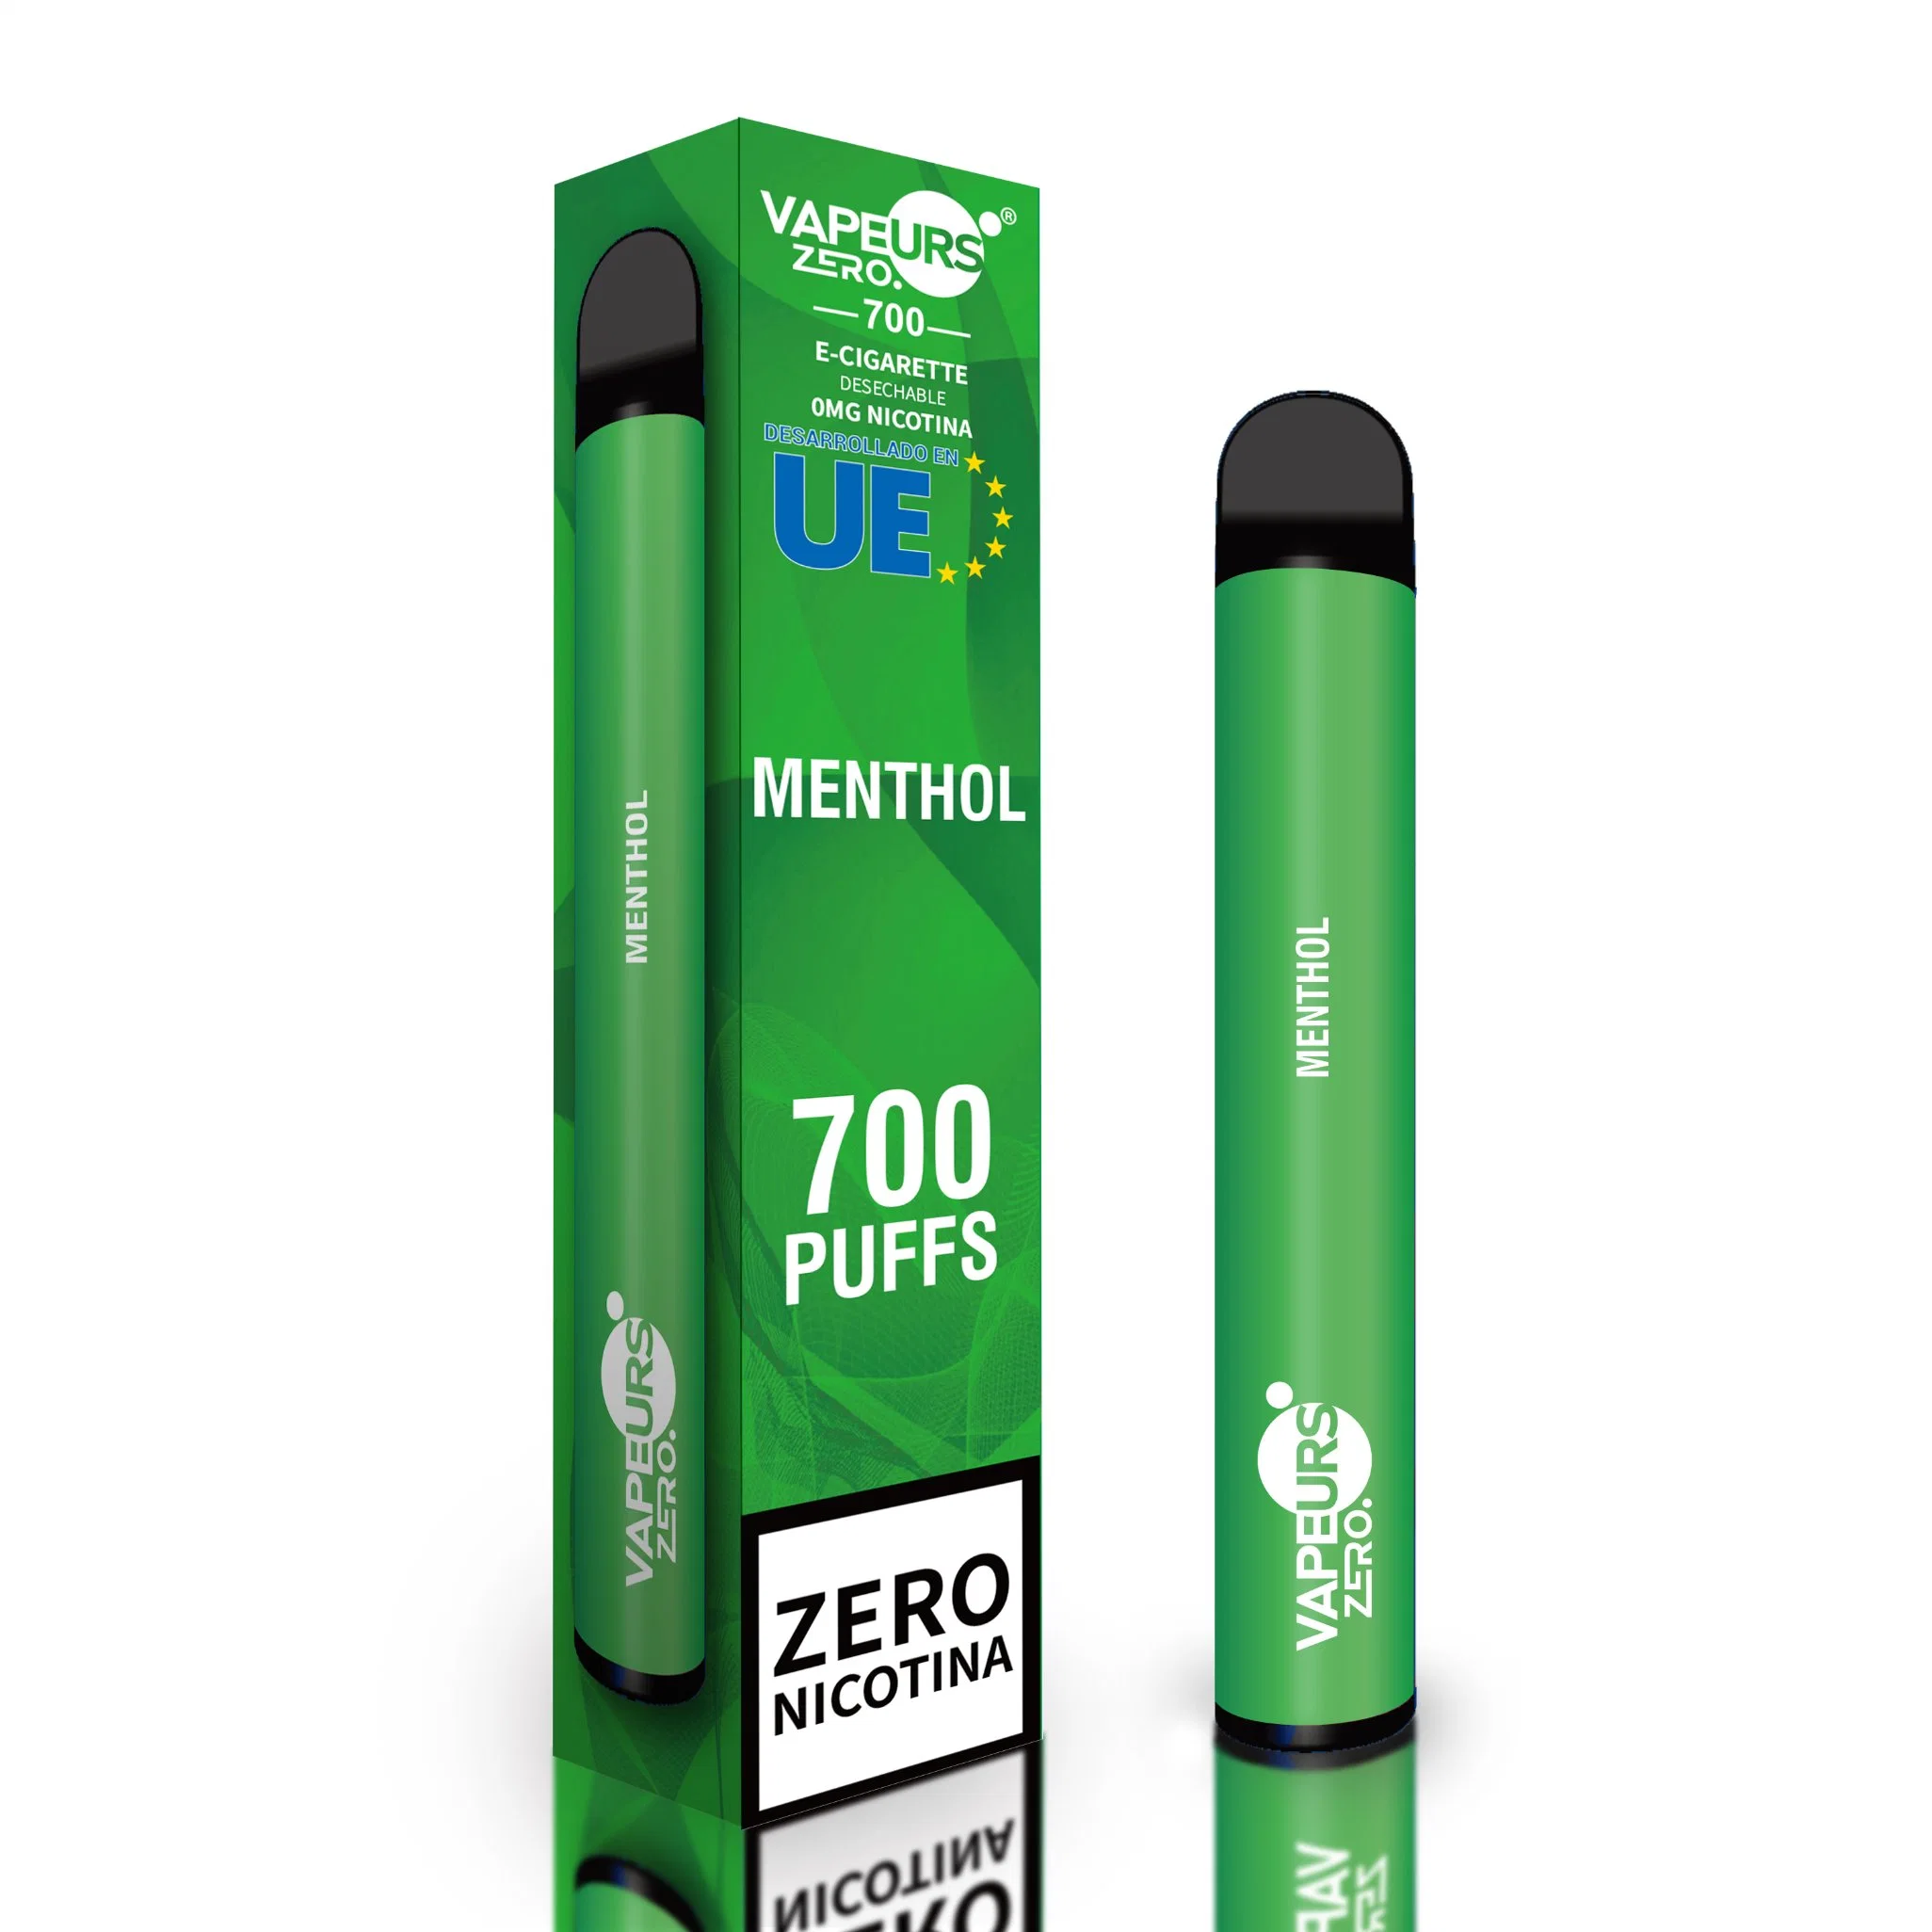 Disposable Vape Vapeurs 600puff Menthol Flavor Mini-E-Cigarette Shortfill E-Liquid with Spanish Mandarin Packaging